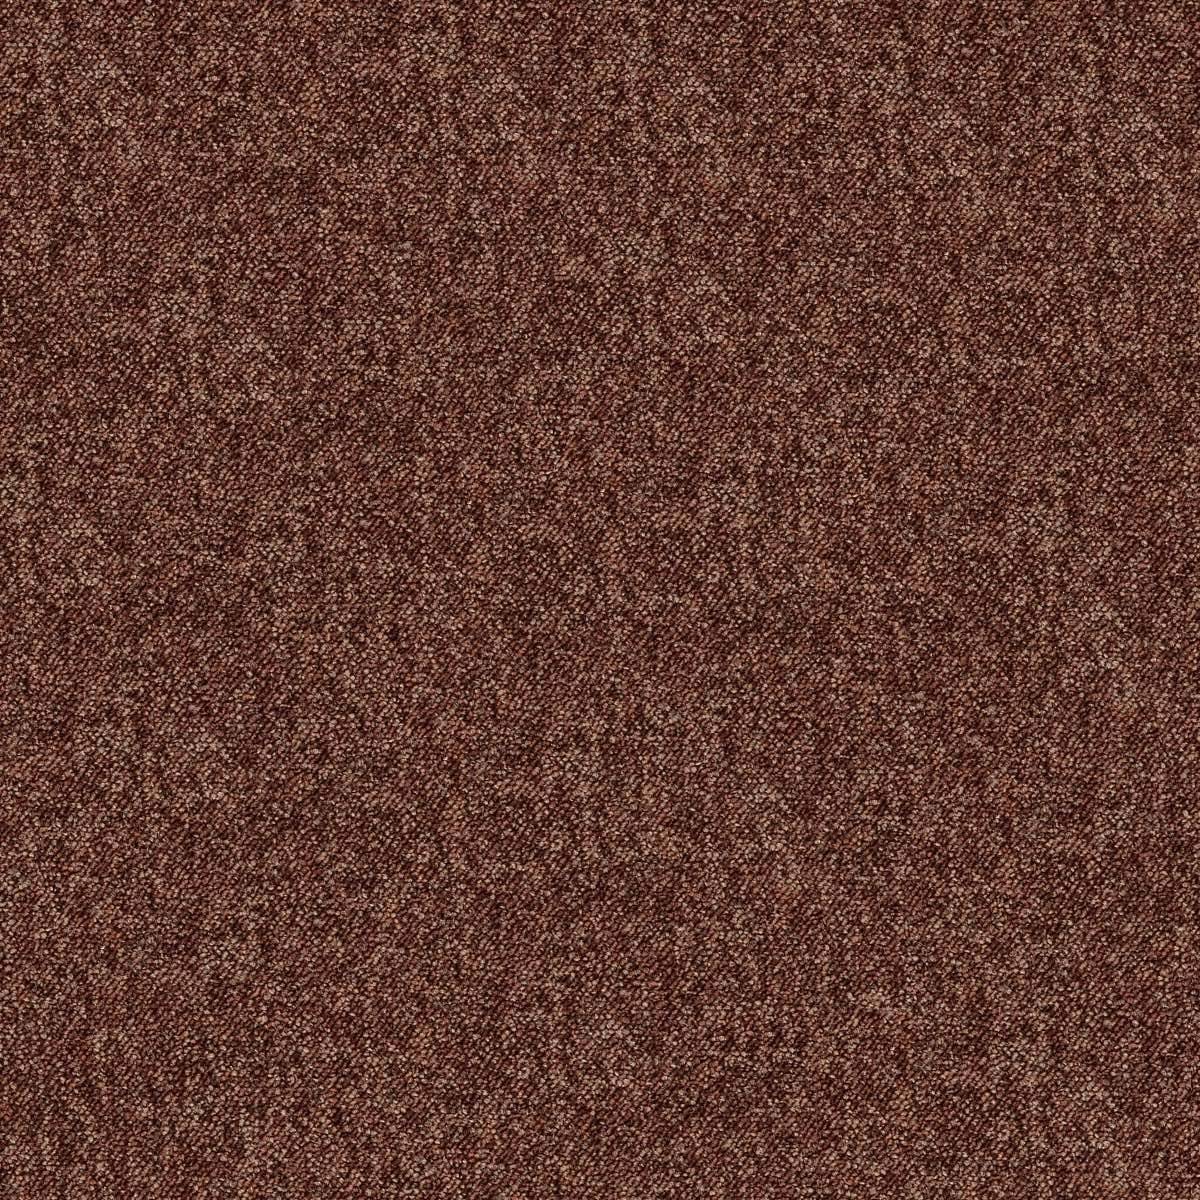 Paragon Toccarre Carpet Tile Marrone